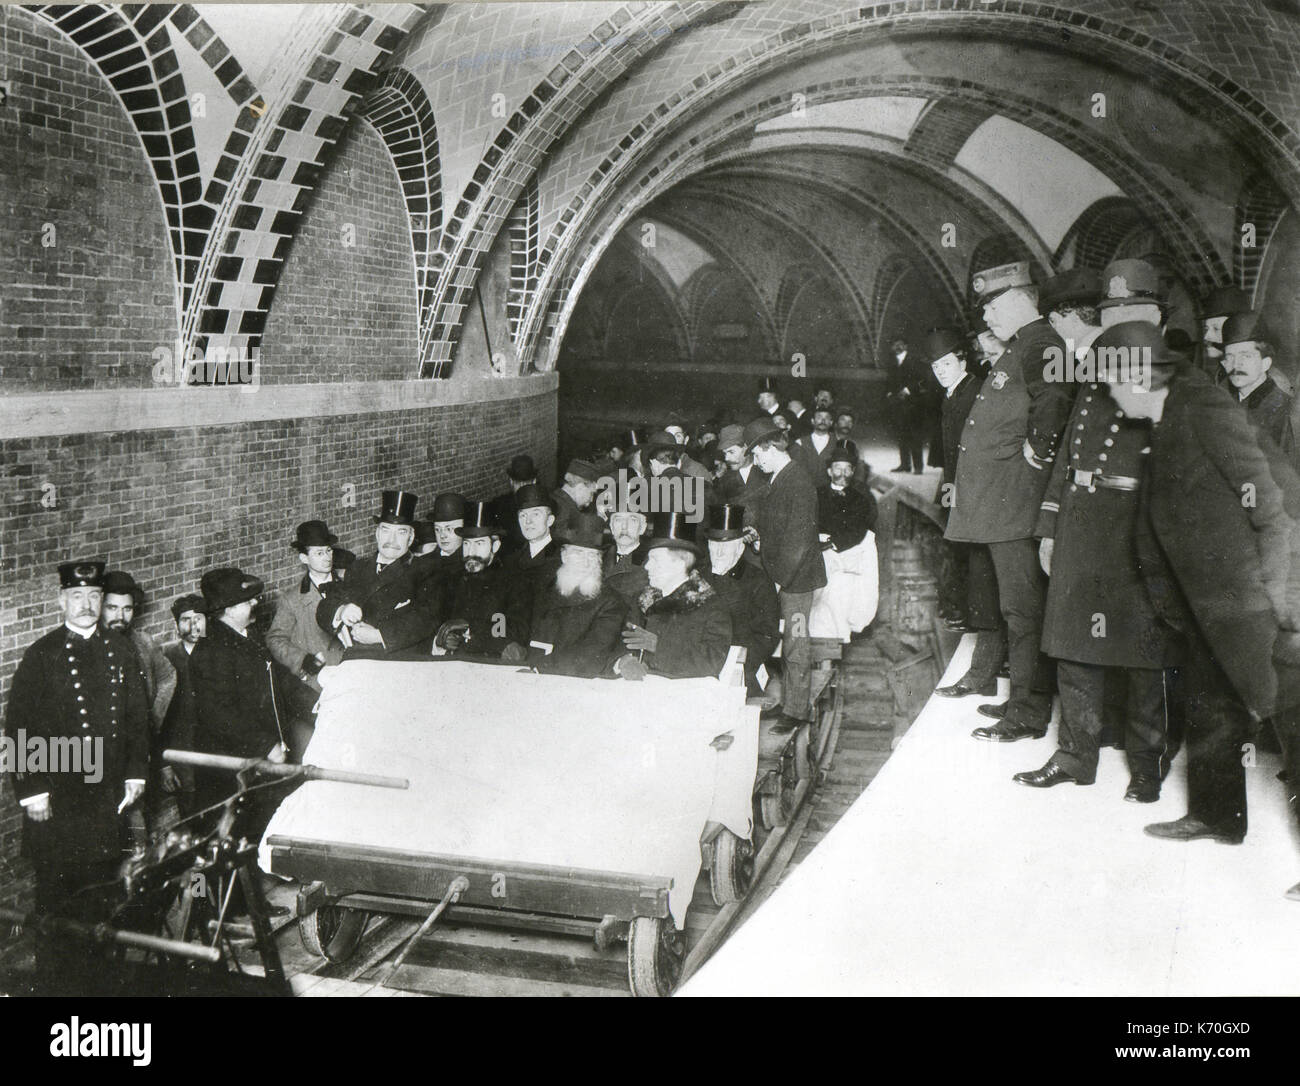 Octobre 27, 1904, New York - Le premier métro lorsqu'il est ouvert, avec les fonctionnaires municipaux et communautaires et les dirigeants d'équitation sur le premier train. À ce moment, le métro prolongé de 21 milles. Banque D'Images